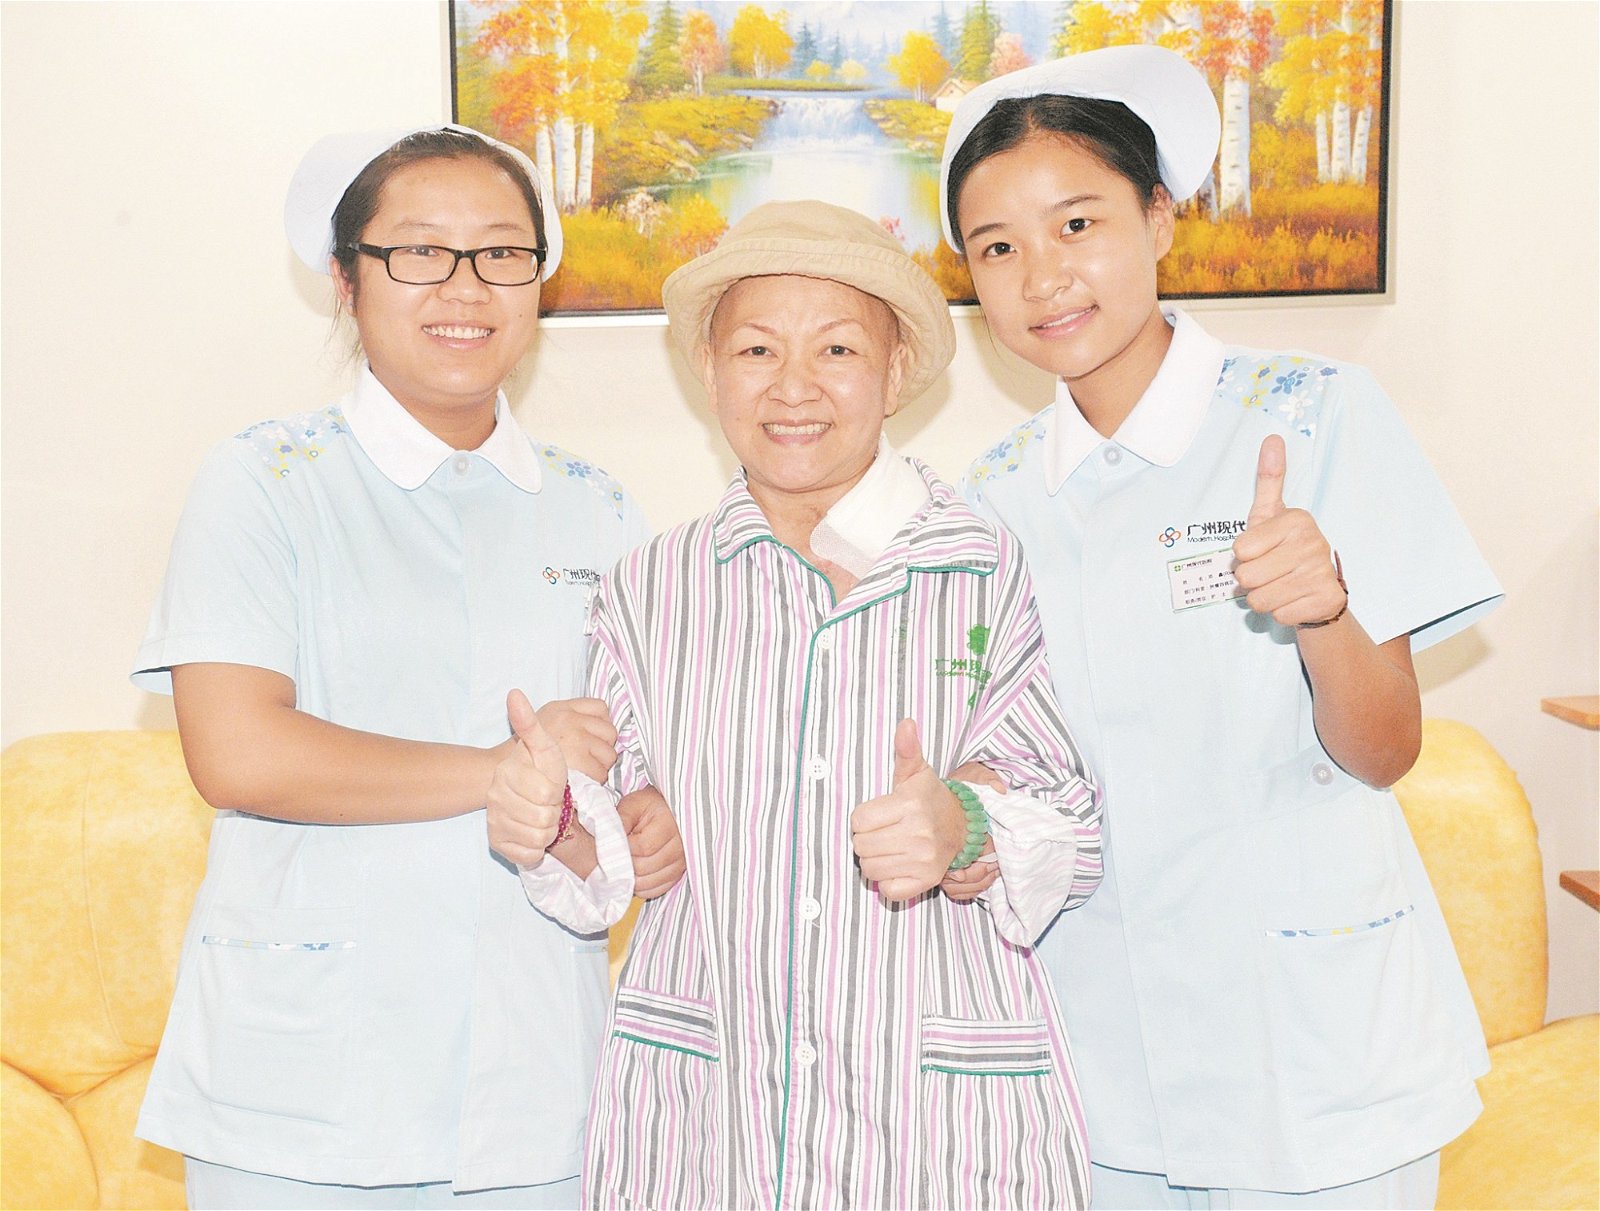 姚彩凤和中国医院里的护士共同合照， 感谢抗癌期间得到医护人员的照顾。